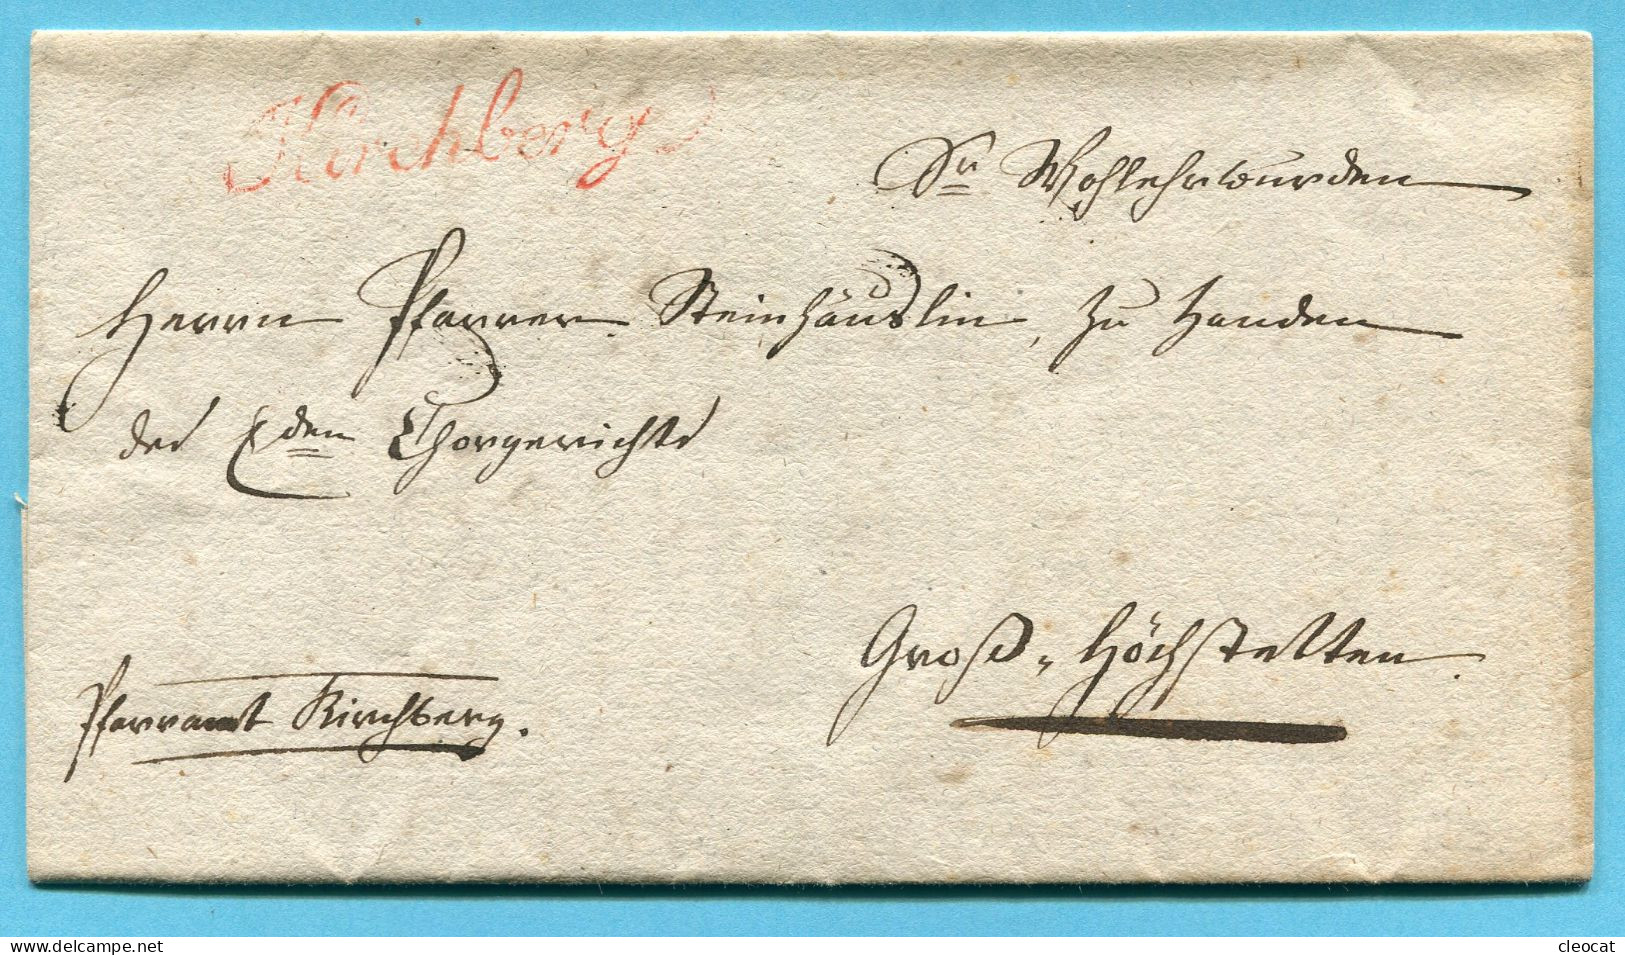 Faltbrief Von Kirchberg Nach Gross-Höchstetten 1830 - ...-1845 Vorphilatelie